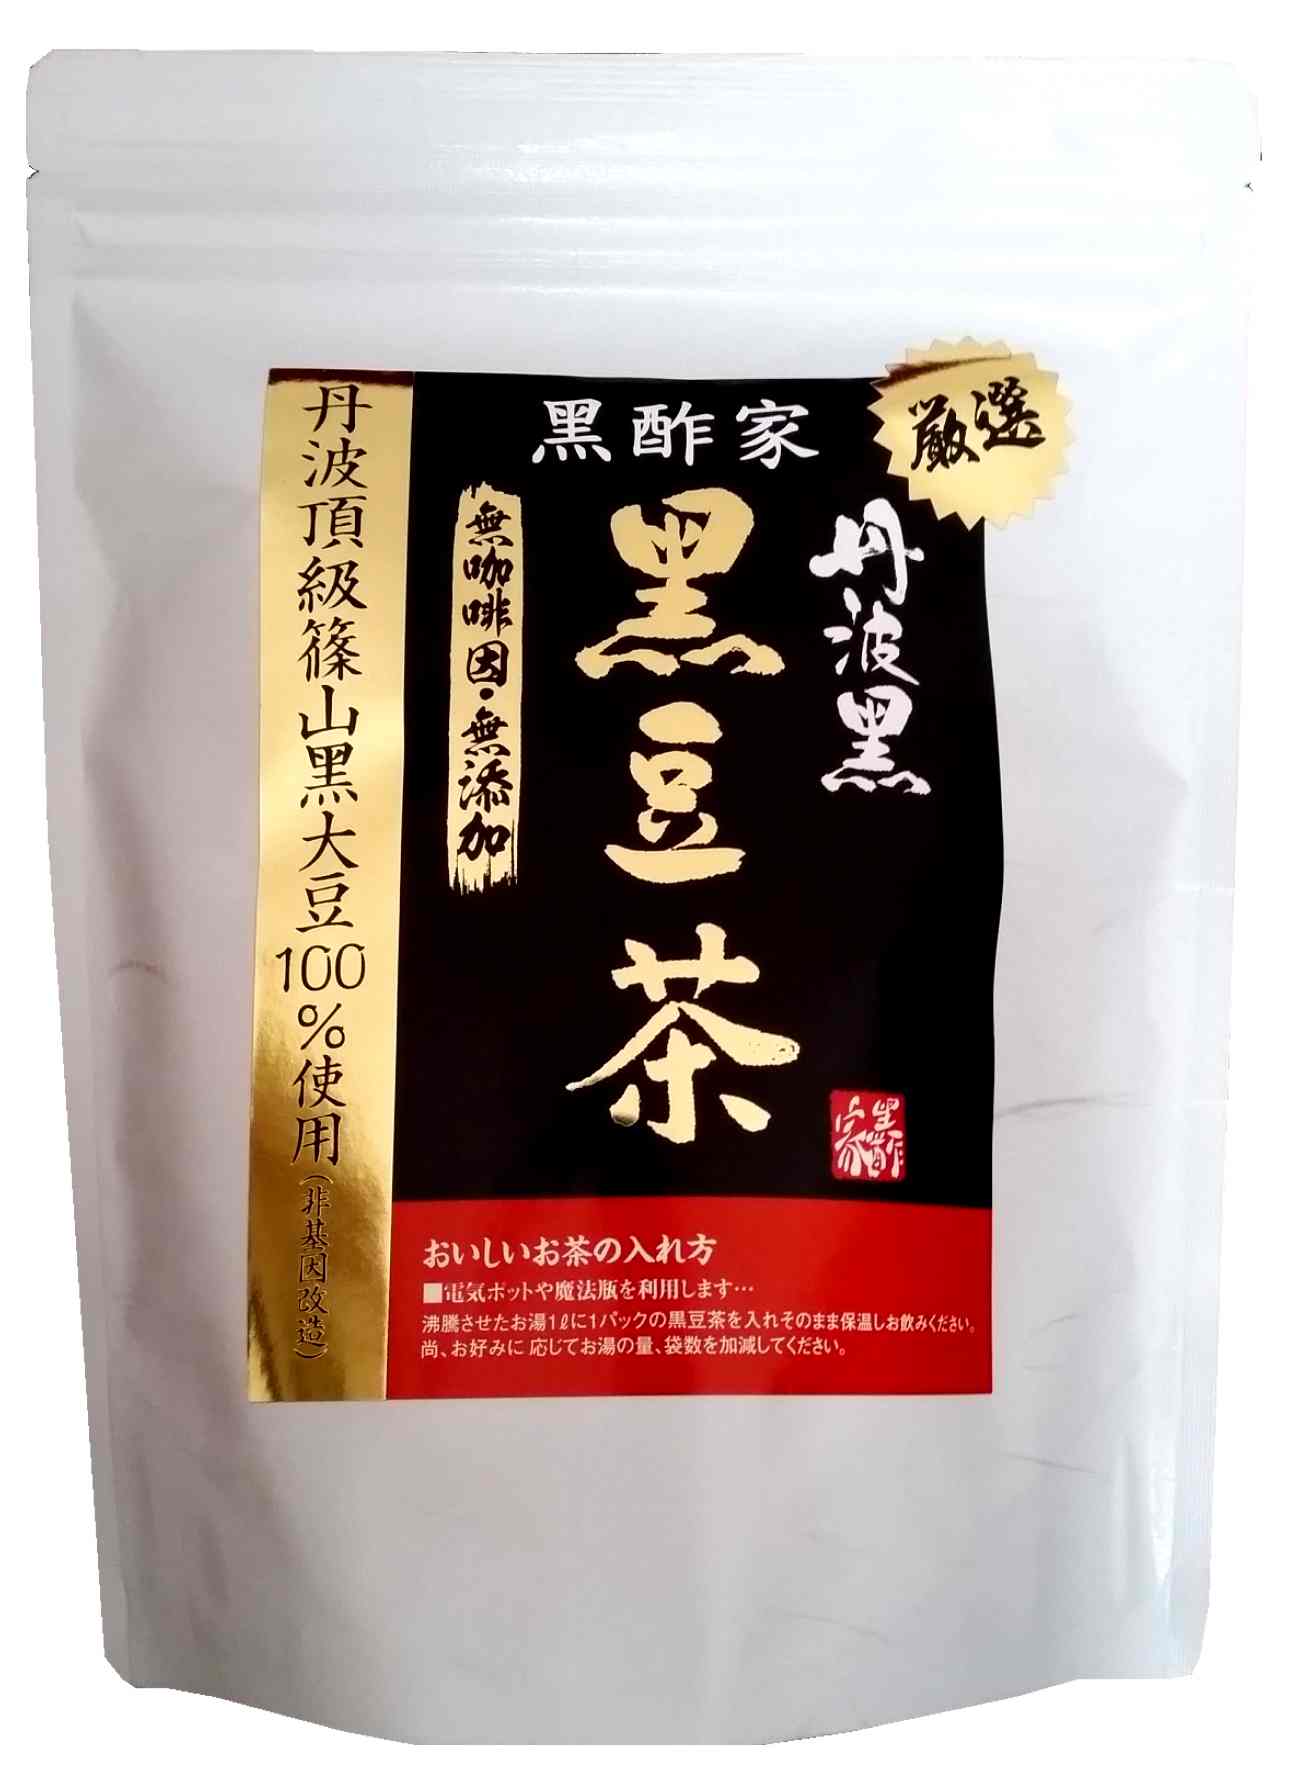 black soybean tea (premium)